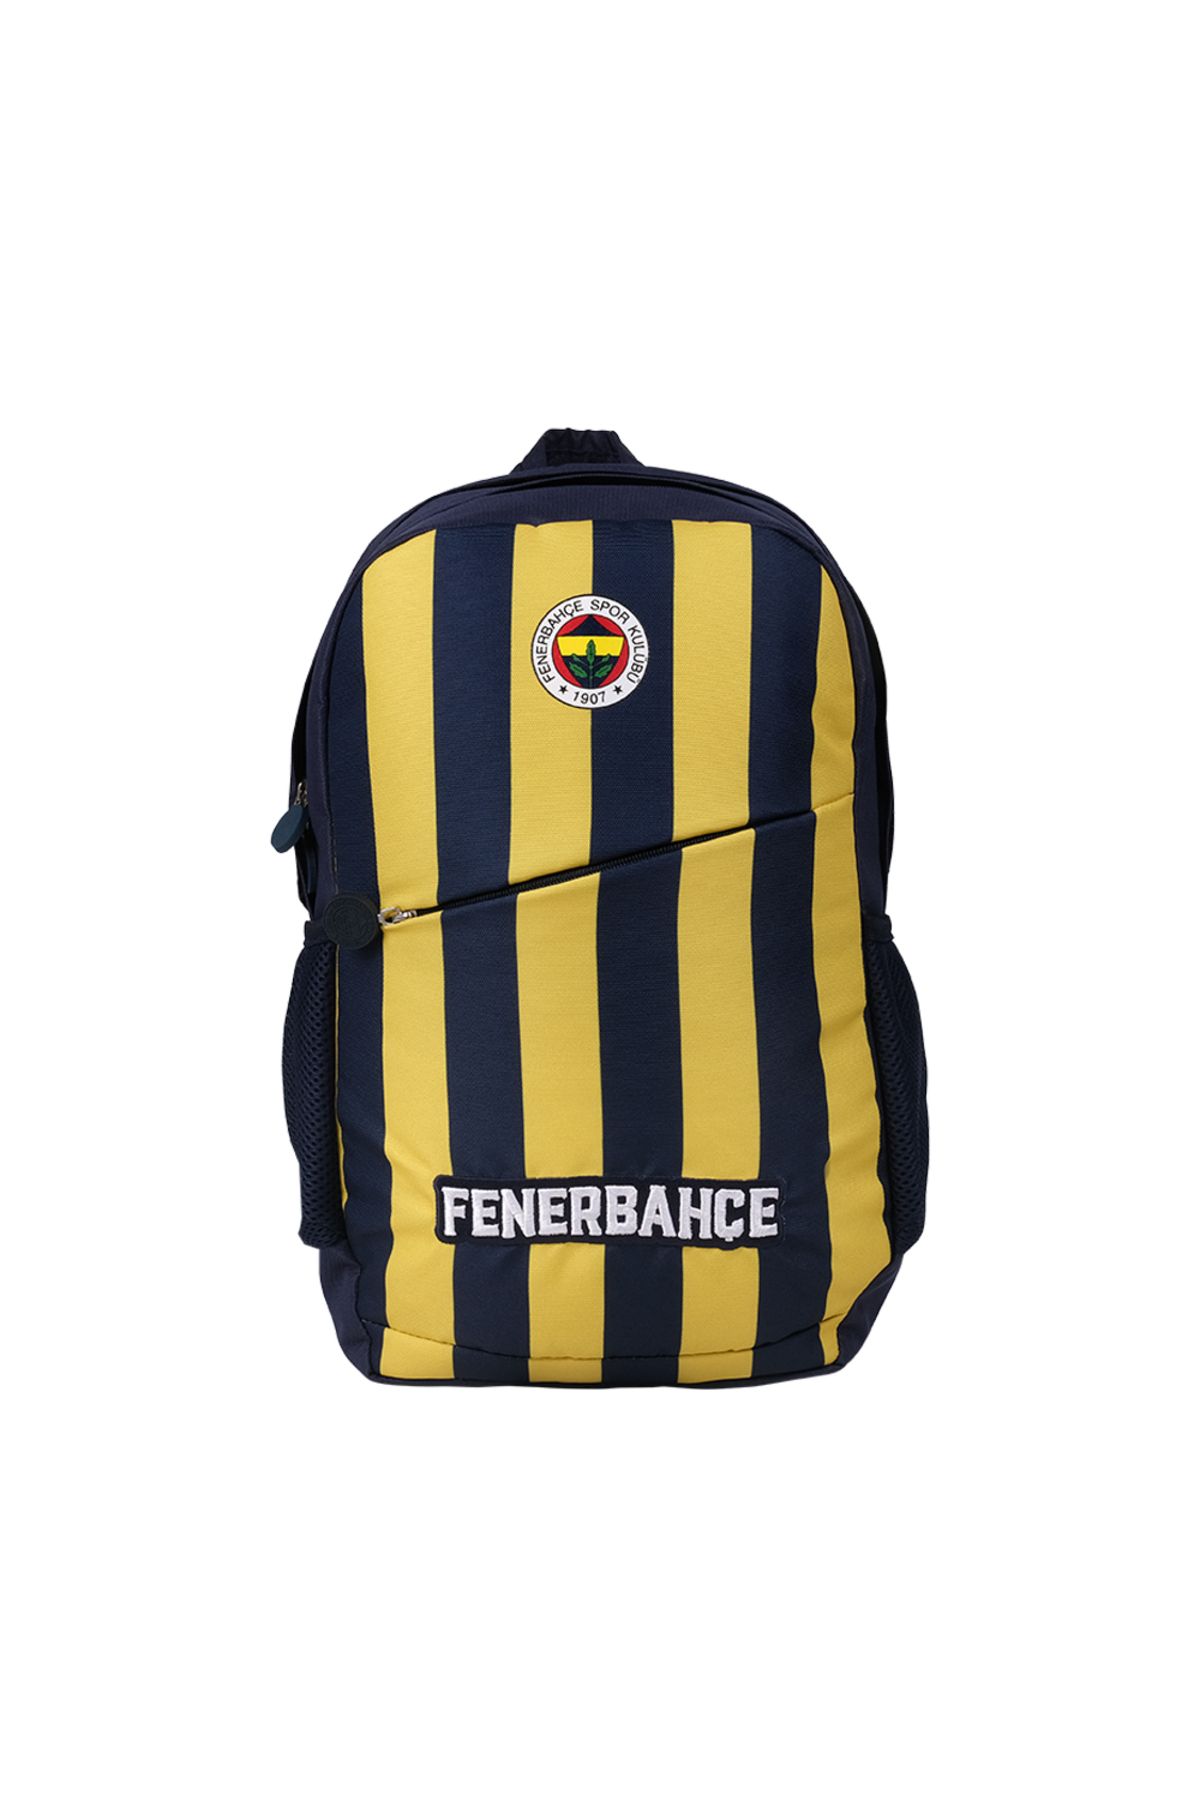 Fenerbahçe Lisanslı Sırt ve Okul Çantası